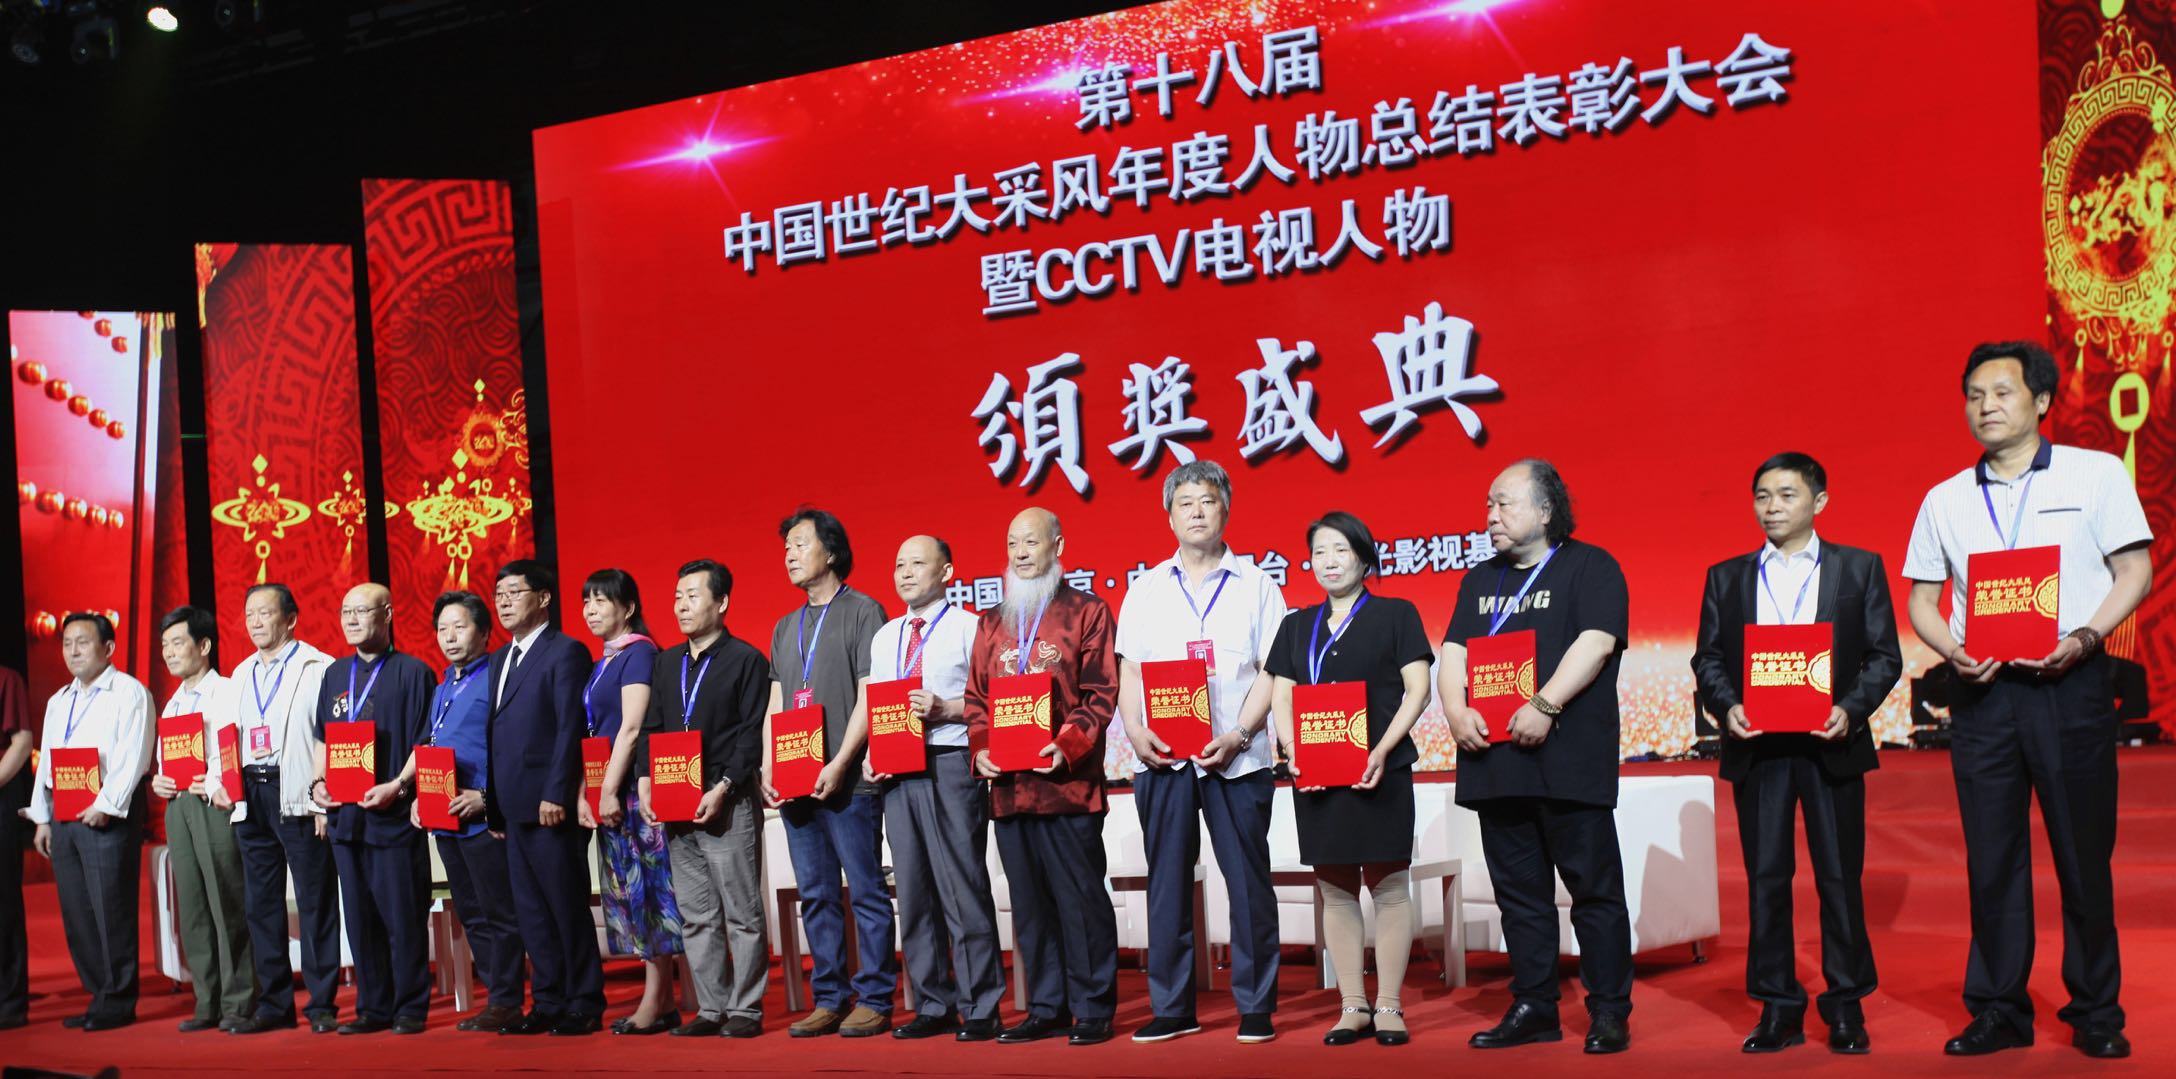 范喜倫參加CCTV電視人物頒獎盛典